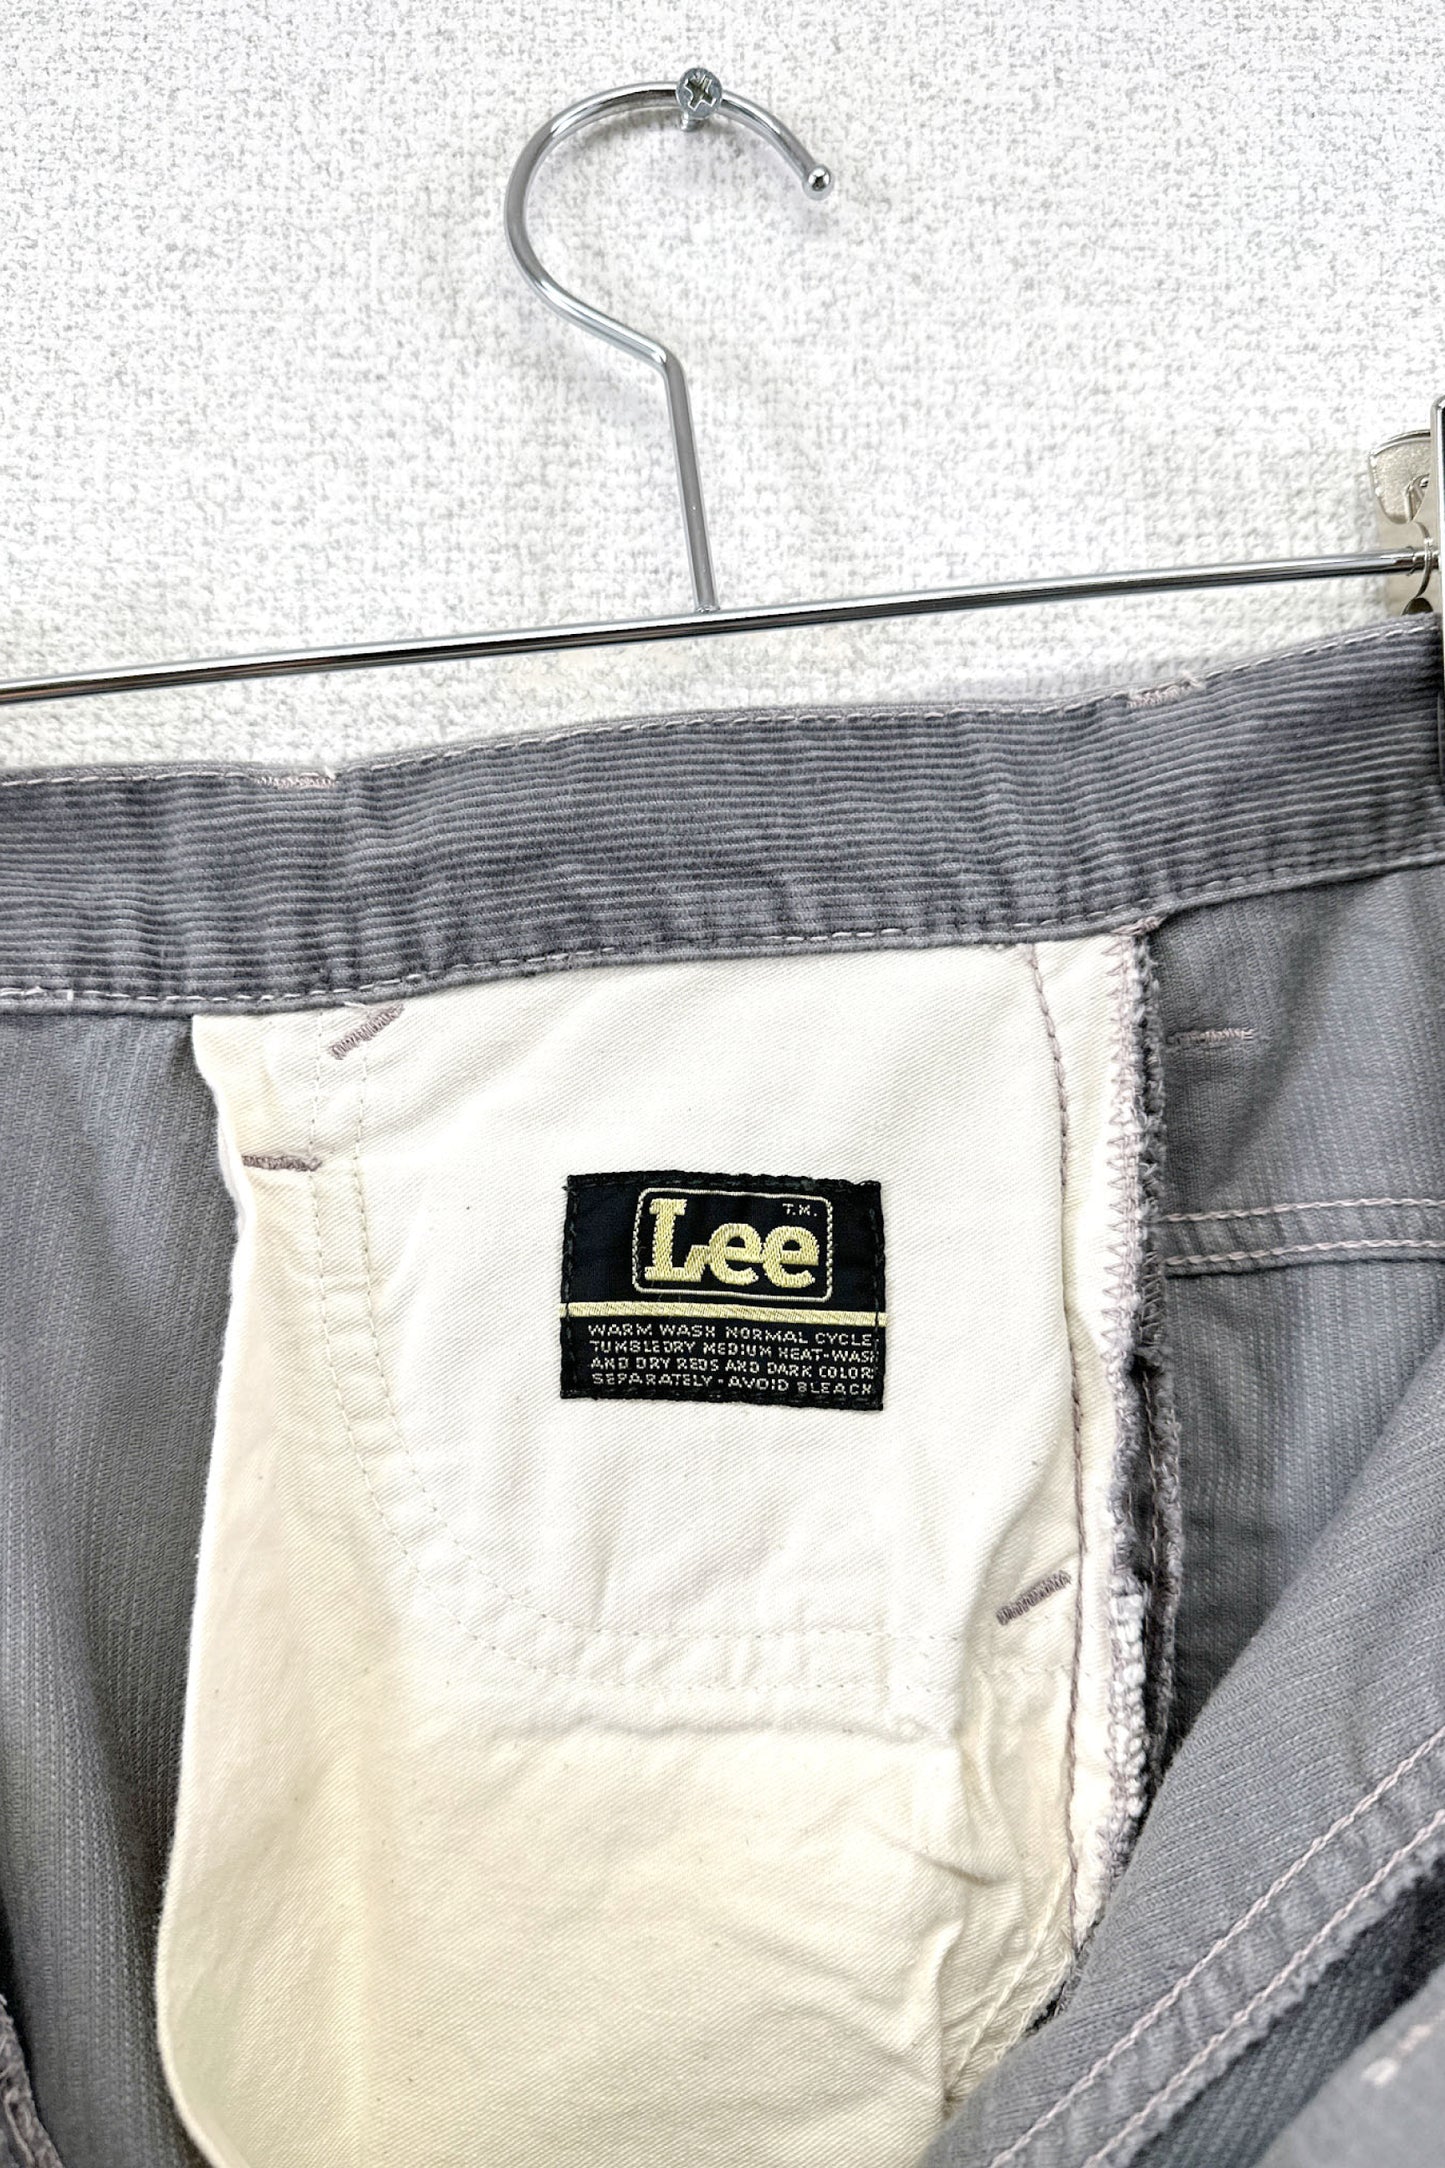 Lee gray corduroy pants